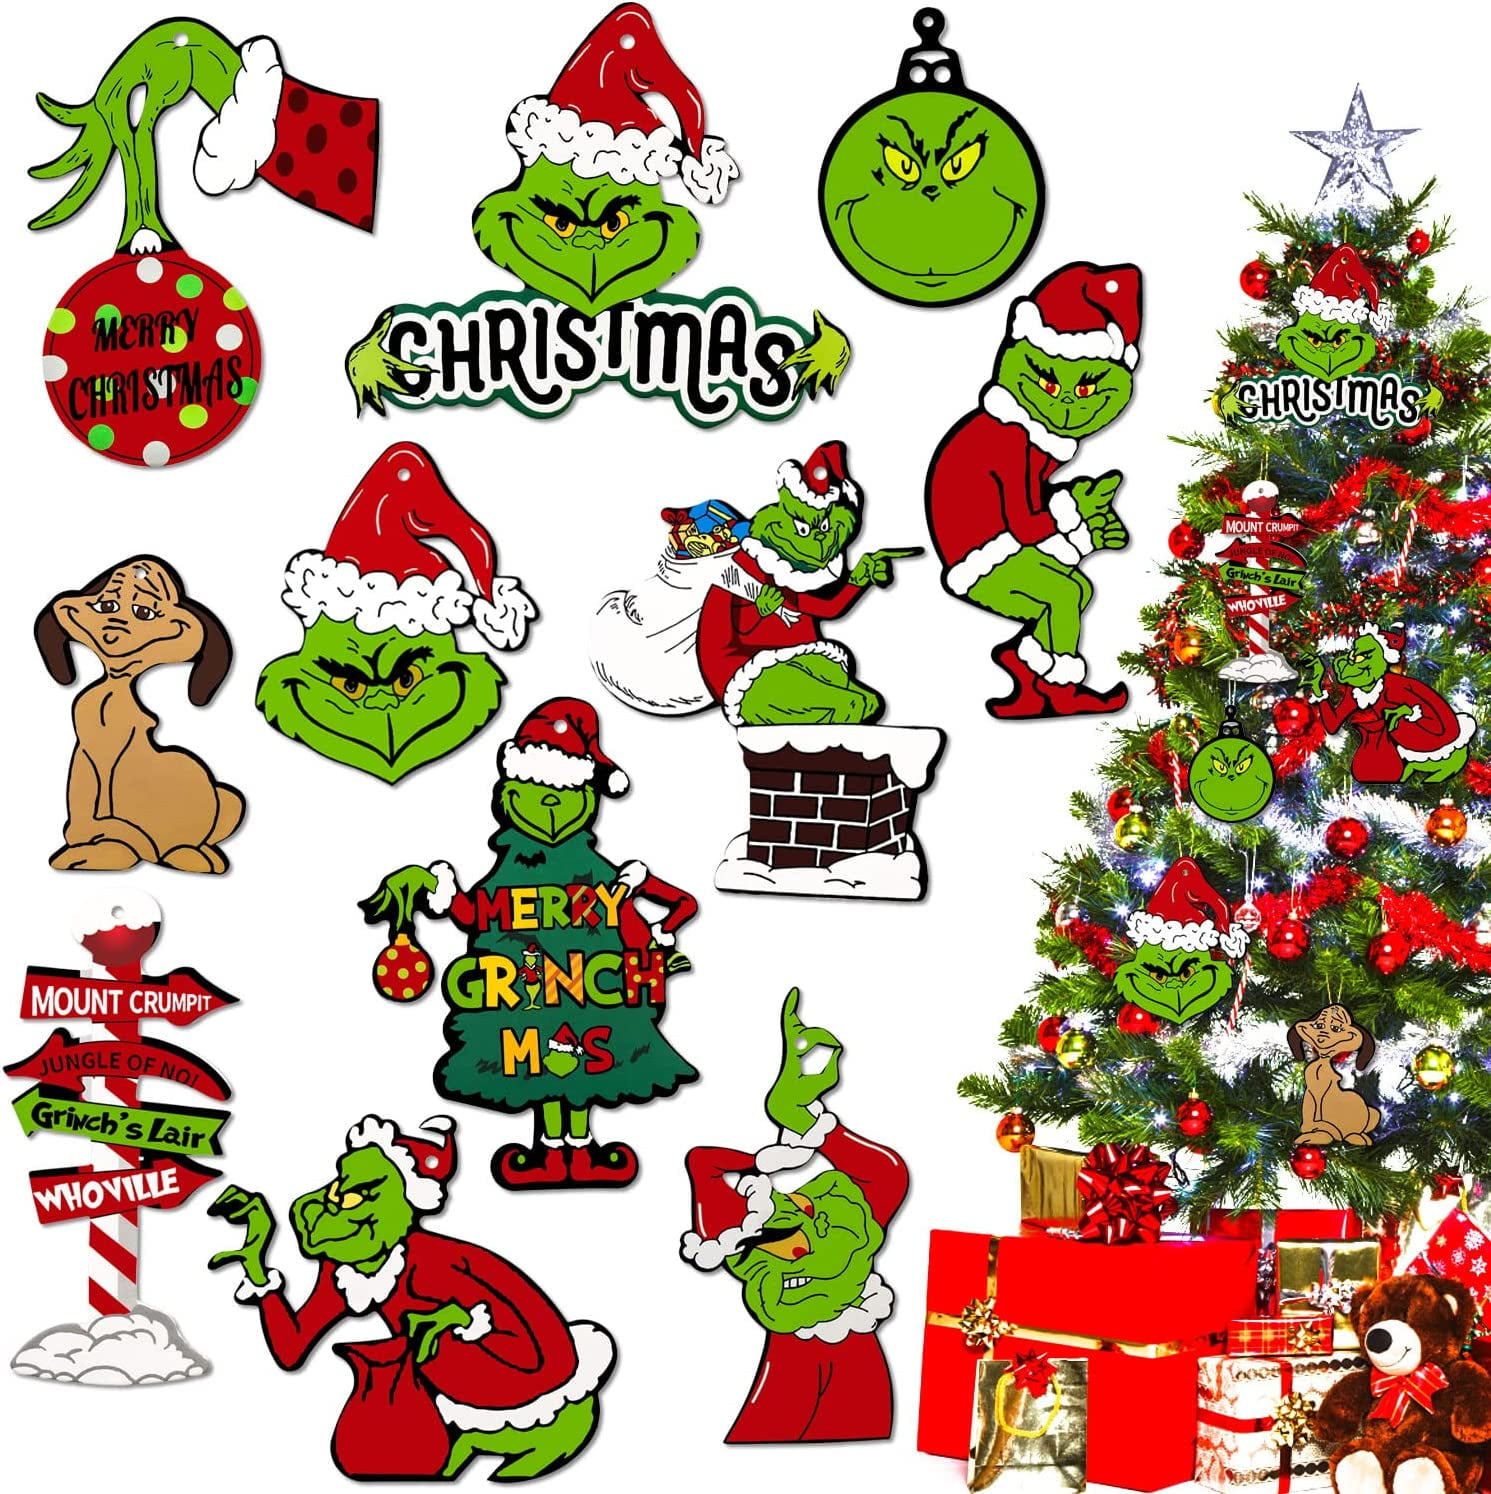  gyujnb Grinch Christmas Grinch Yard Insert - Large Grinchs Tree  Topper Decor, Christmas Tree Decor,Grinchmas Decor for Christmas Tree Xmas  Party Supplies Tree Topper Gnome Christmas : Home & Kitchen